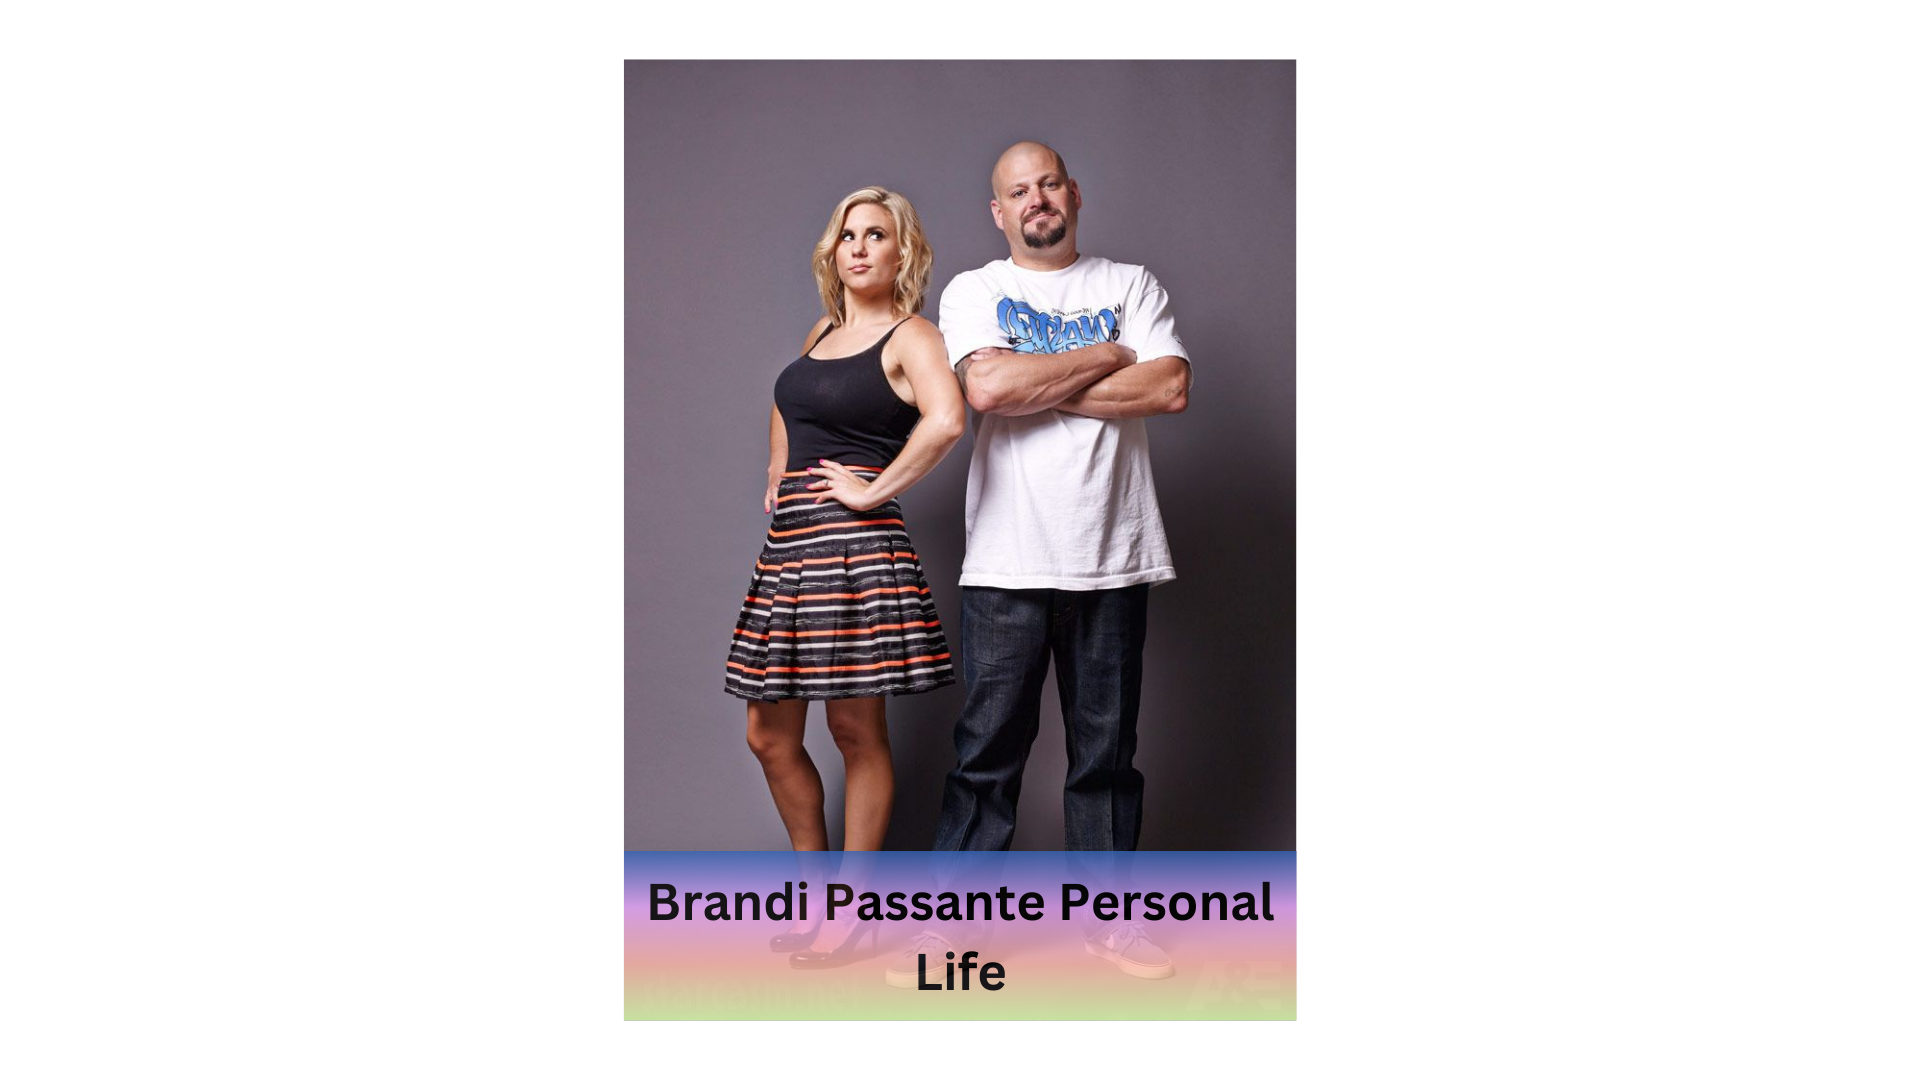 Brandi Passante net worth
